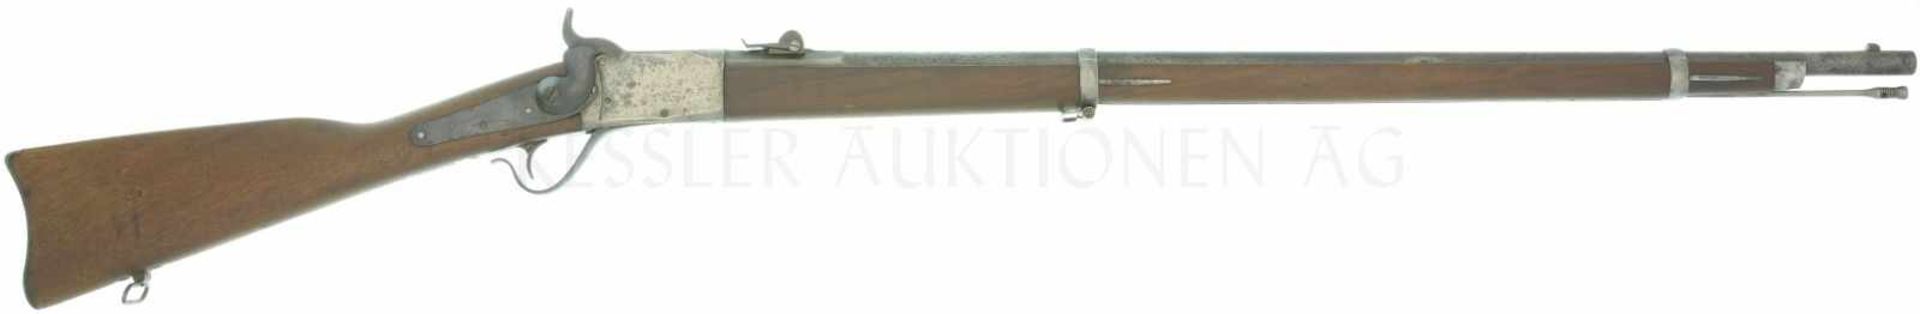 Geniegewehr Peabody 1867/77, Kal. 10.4mmRZ LL 840mm, TL 1315mm, Blockverschluss, Schweizerlauf mit